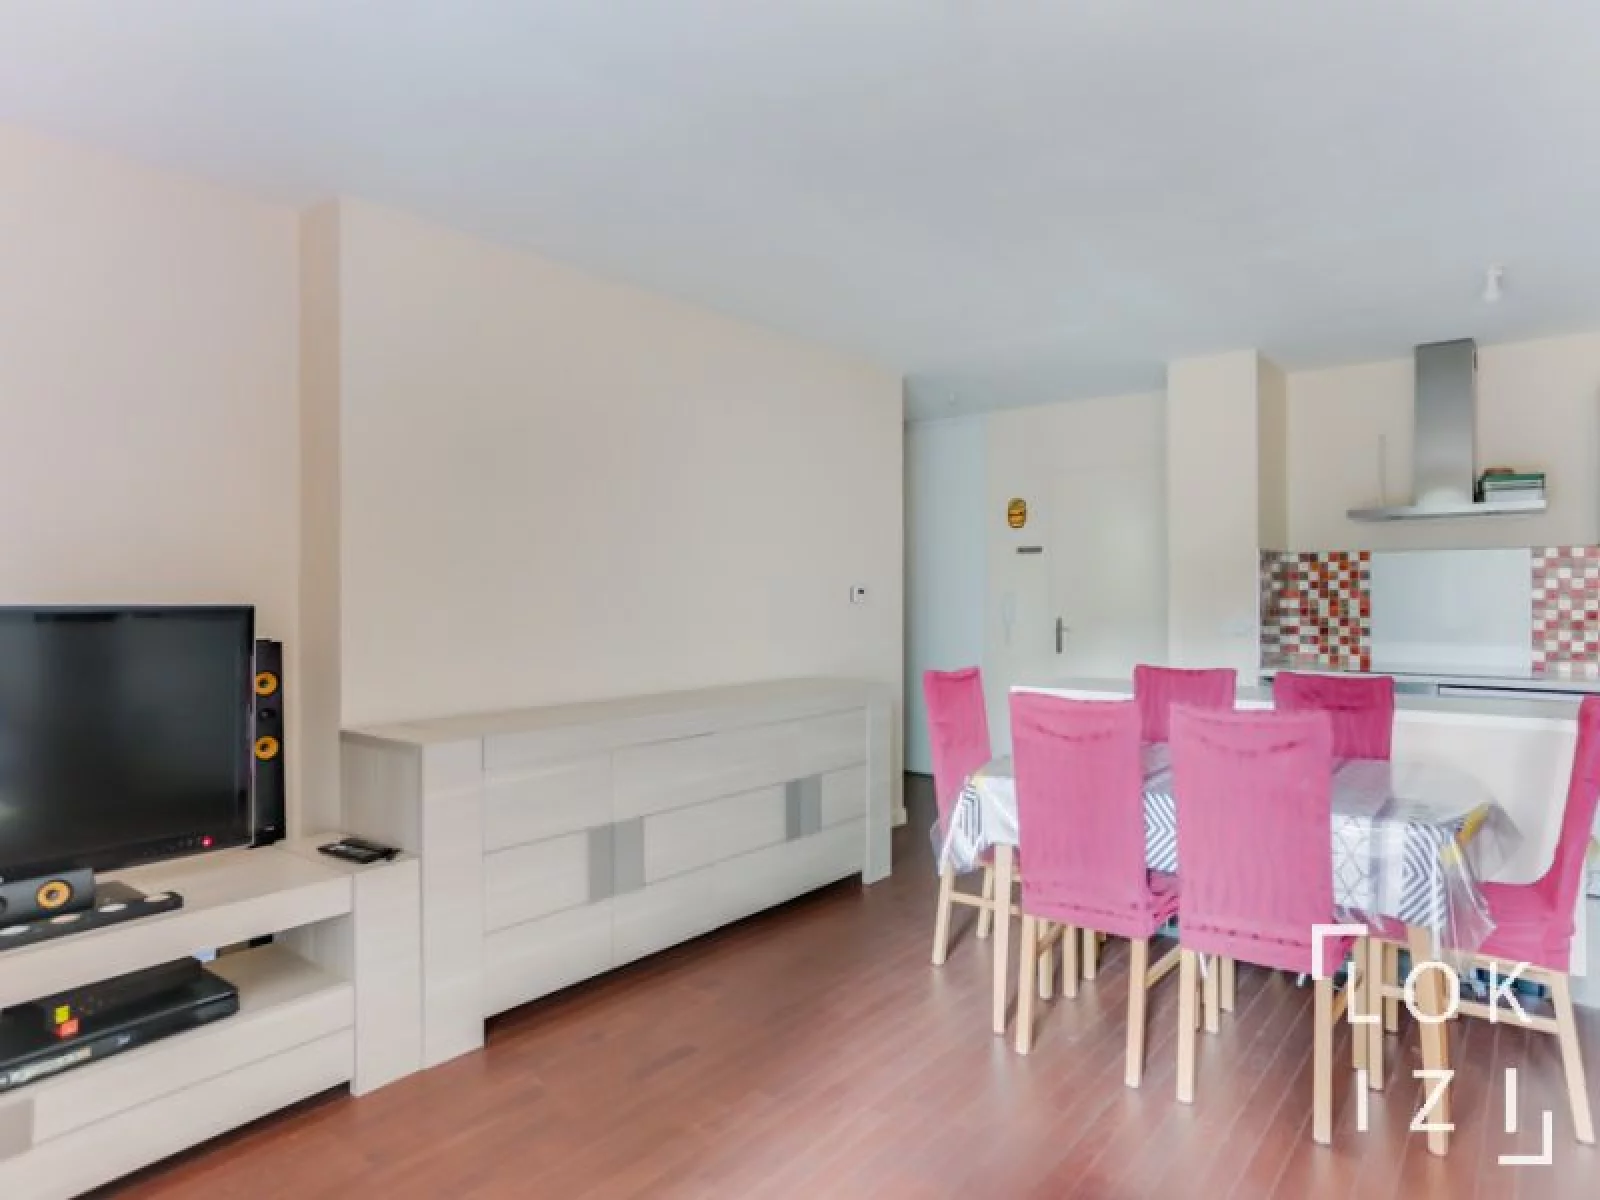  Vente appartement meubl 3 pices 64m avec terrasse (Paris - Rosny s/ Bois 93)